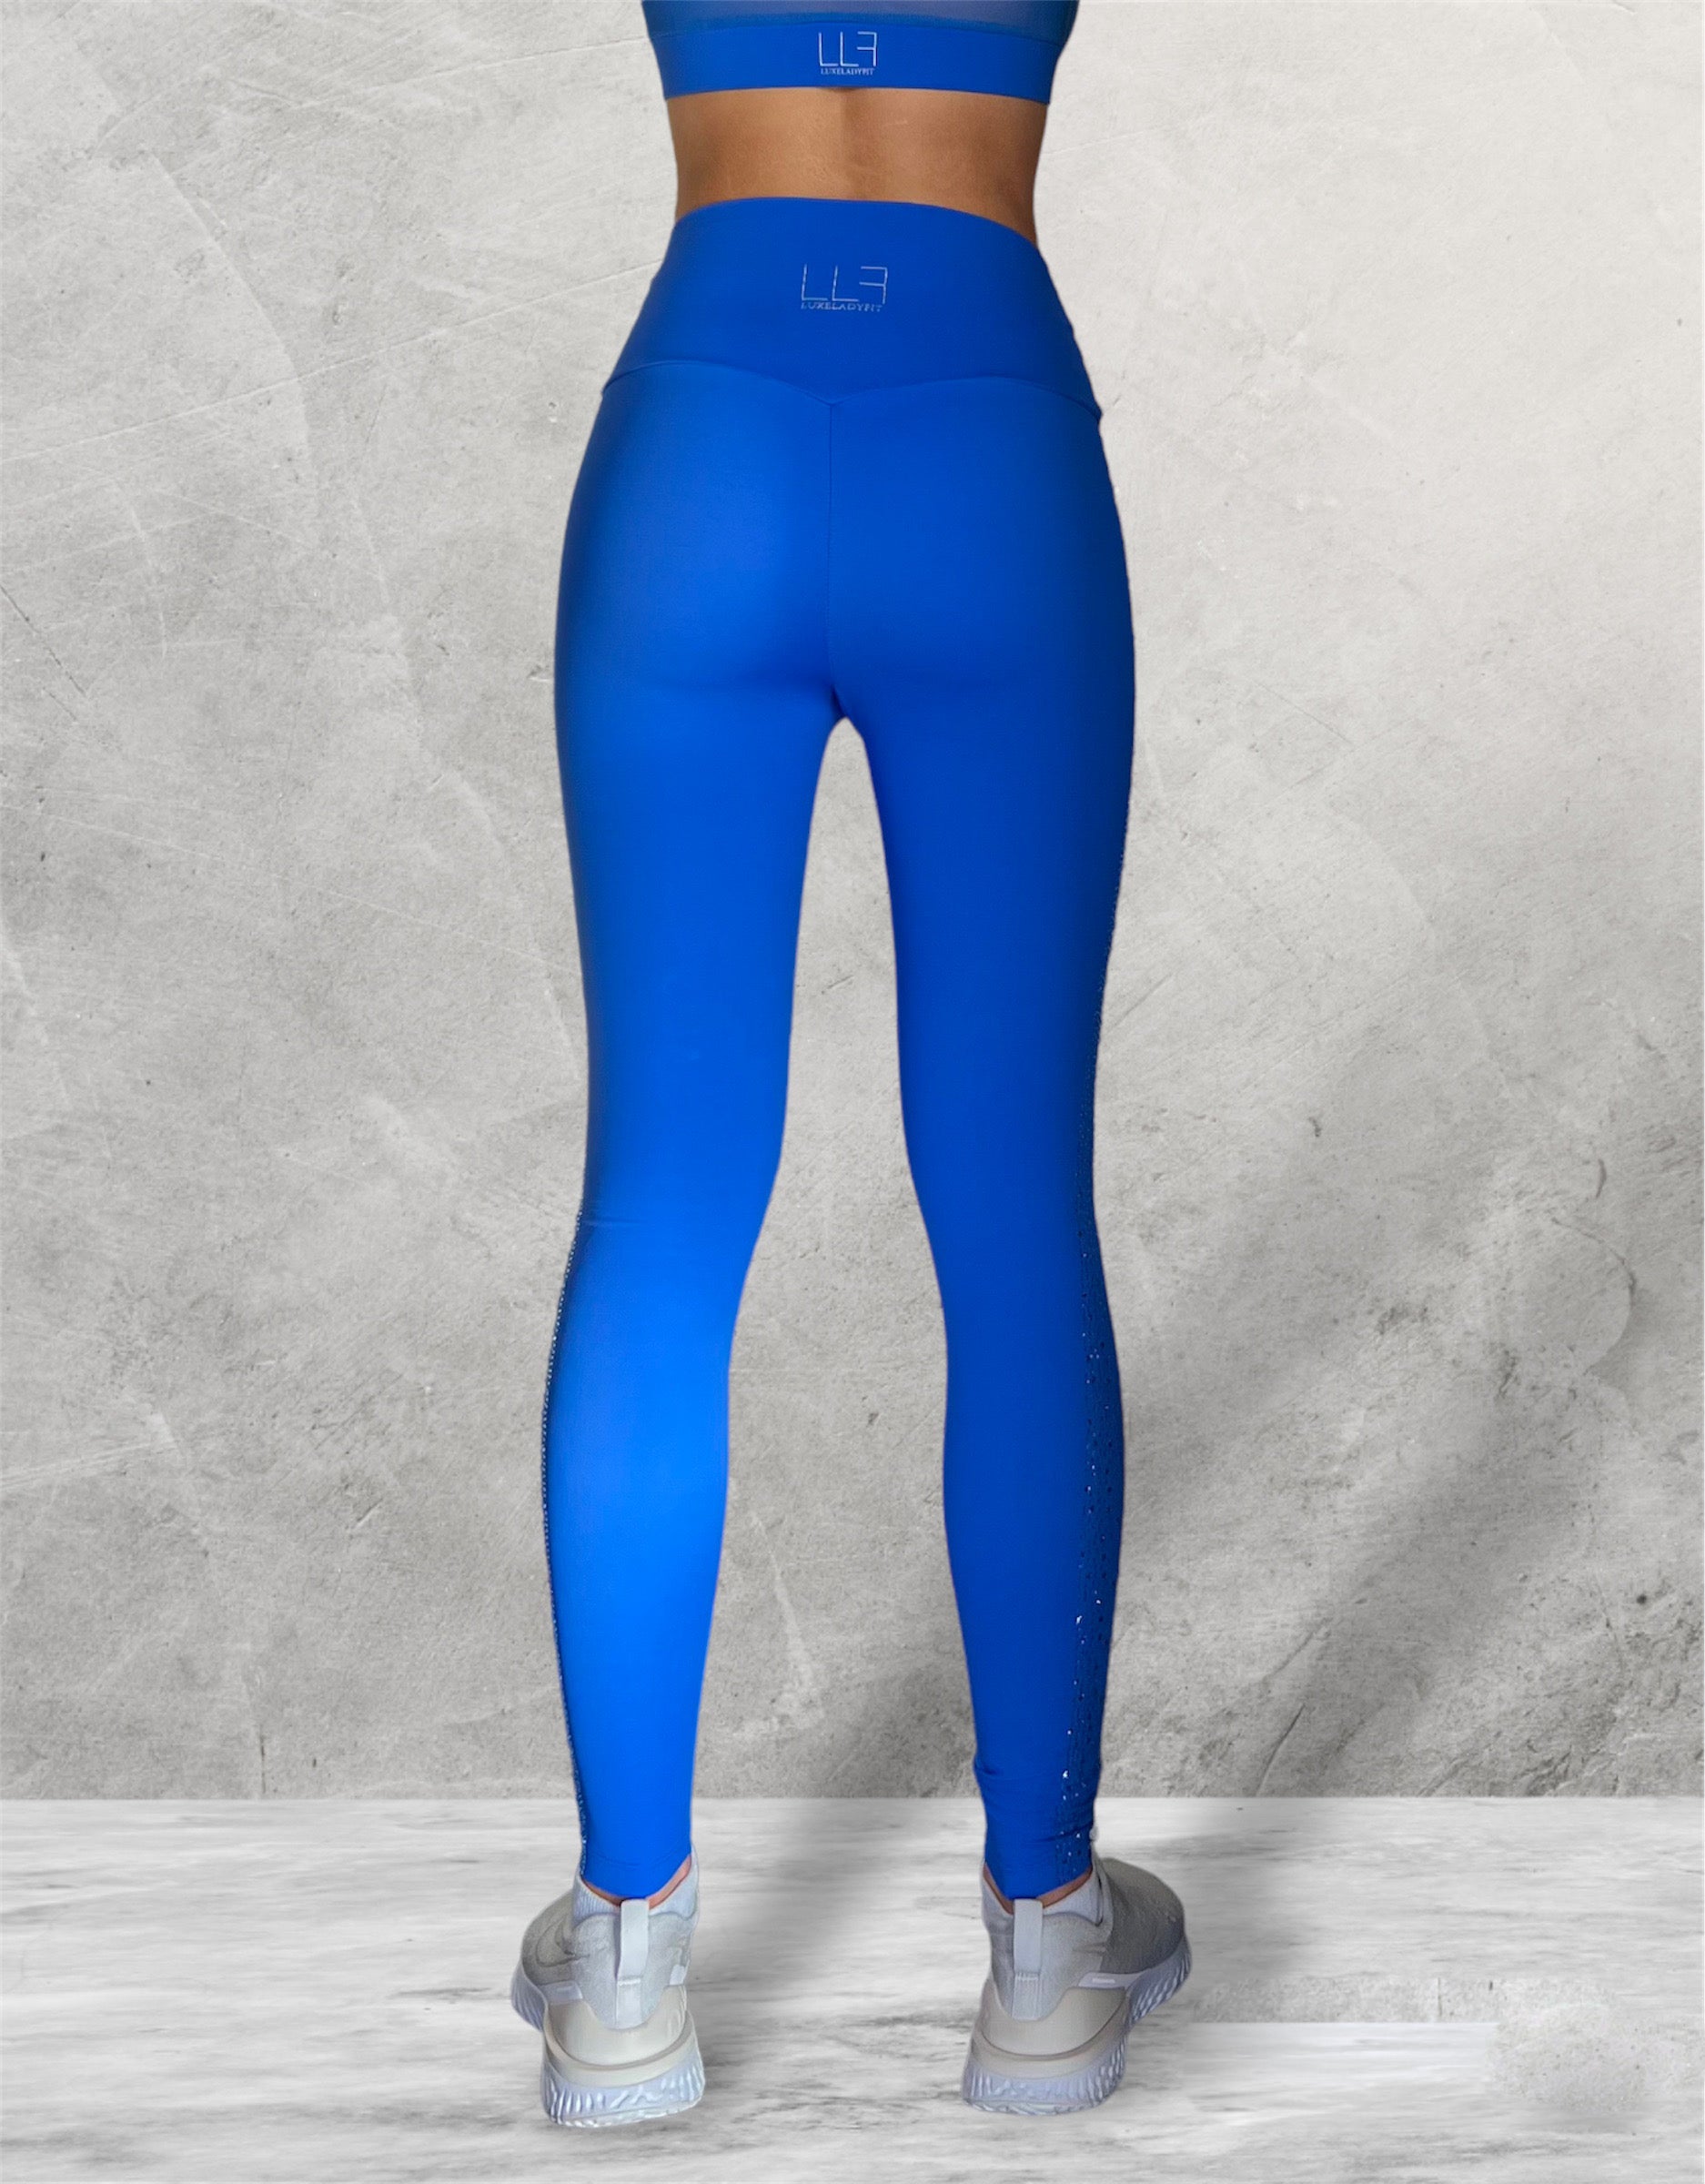 Cobalt Blue Diamond Legging, Women's Leggings